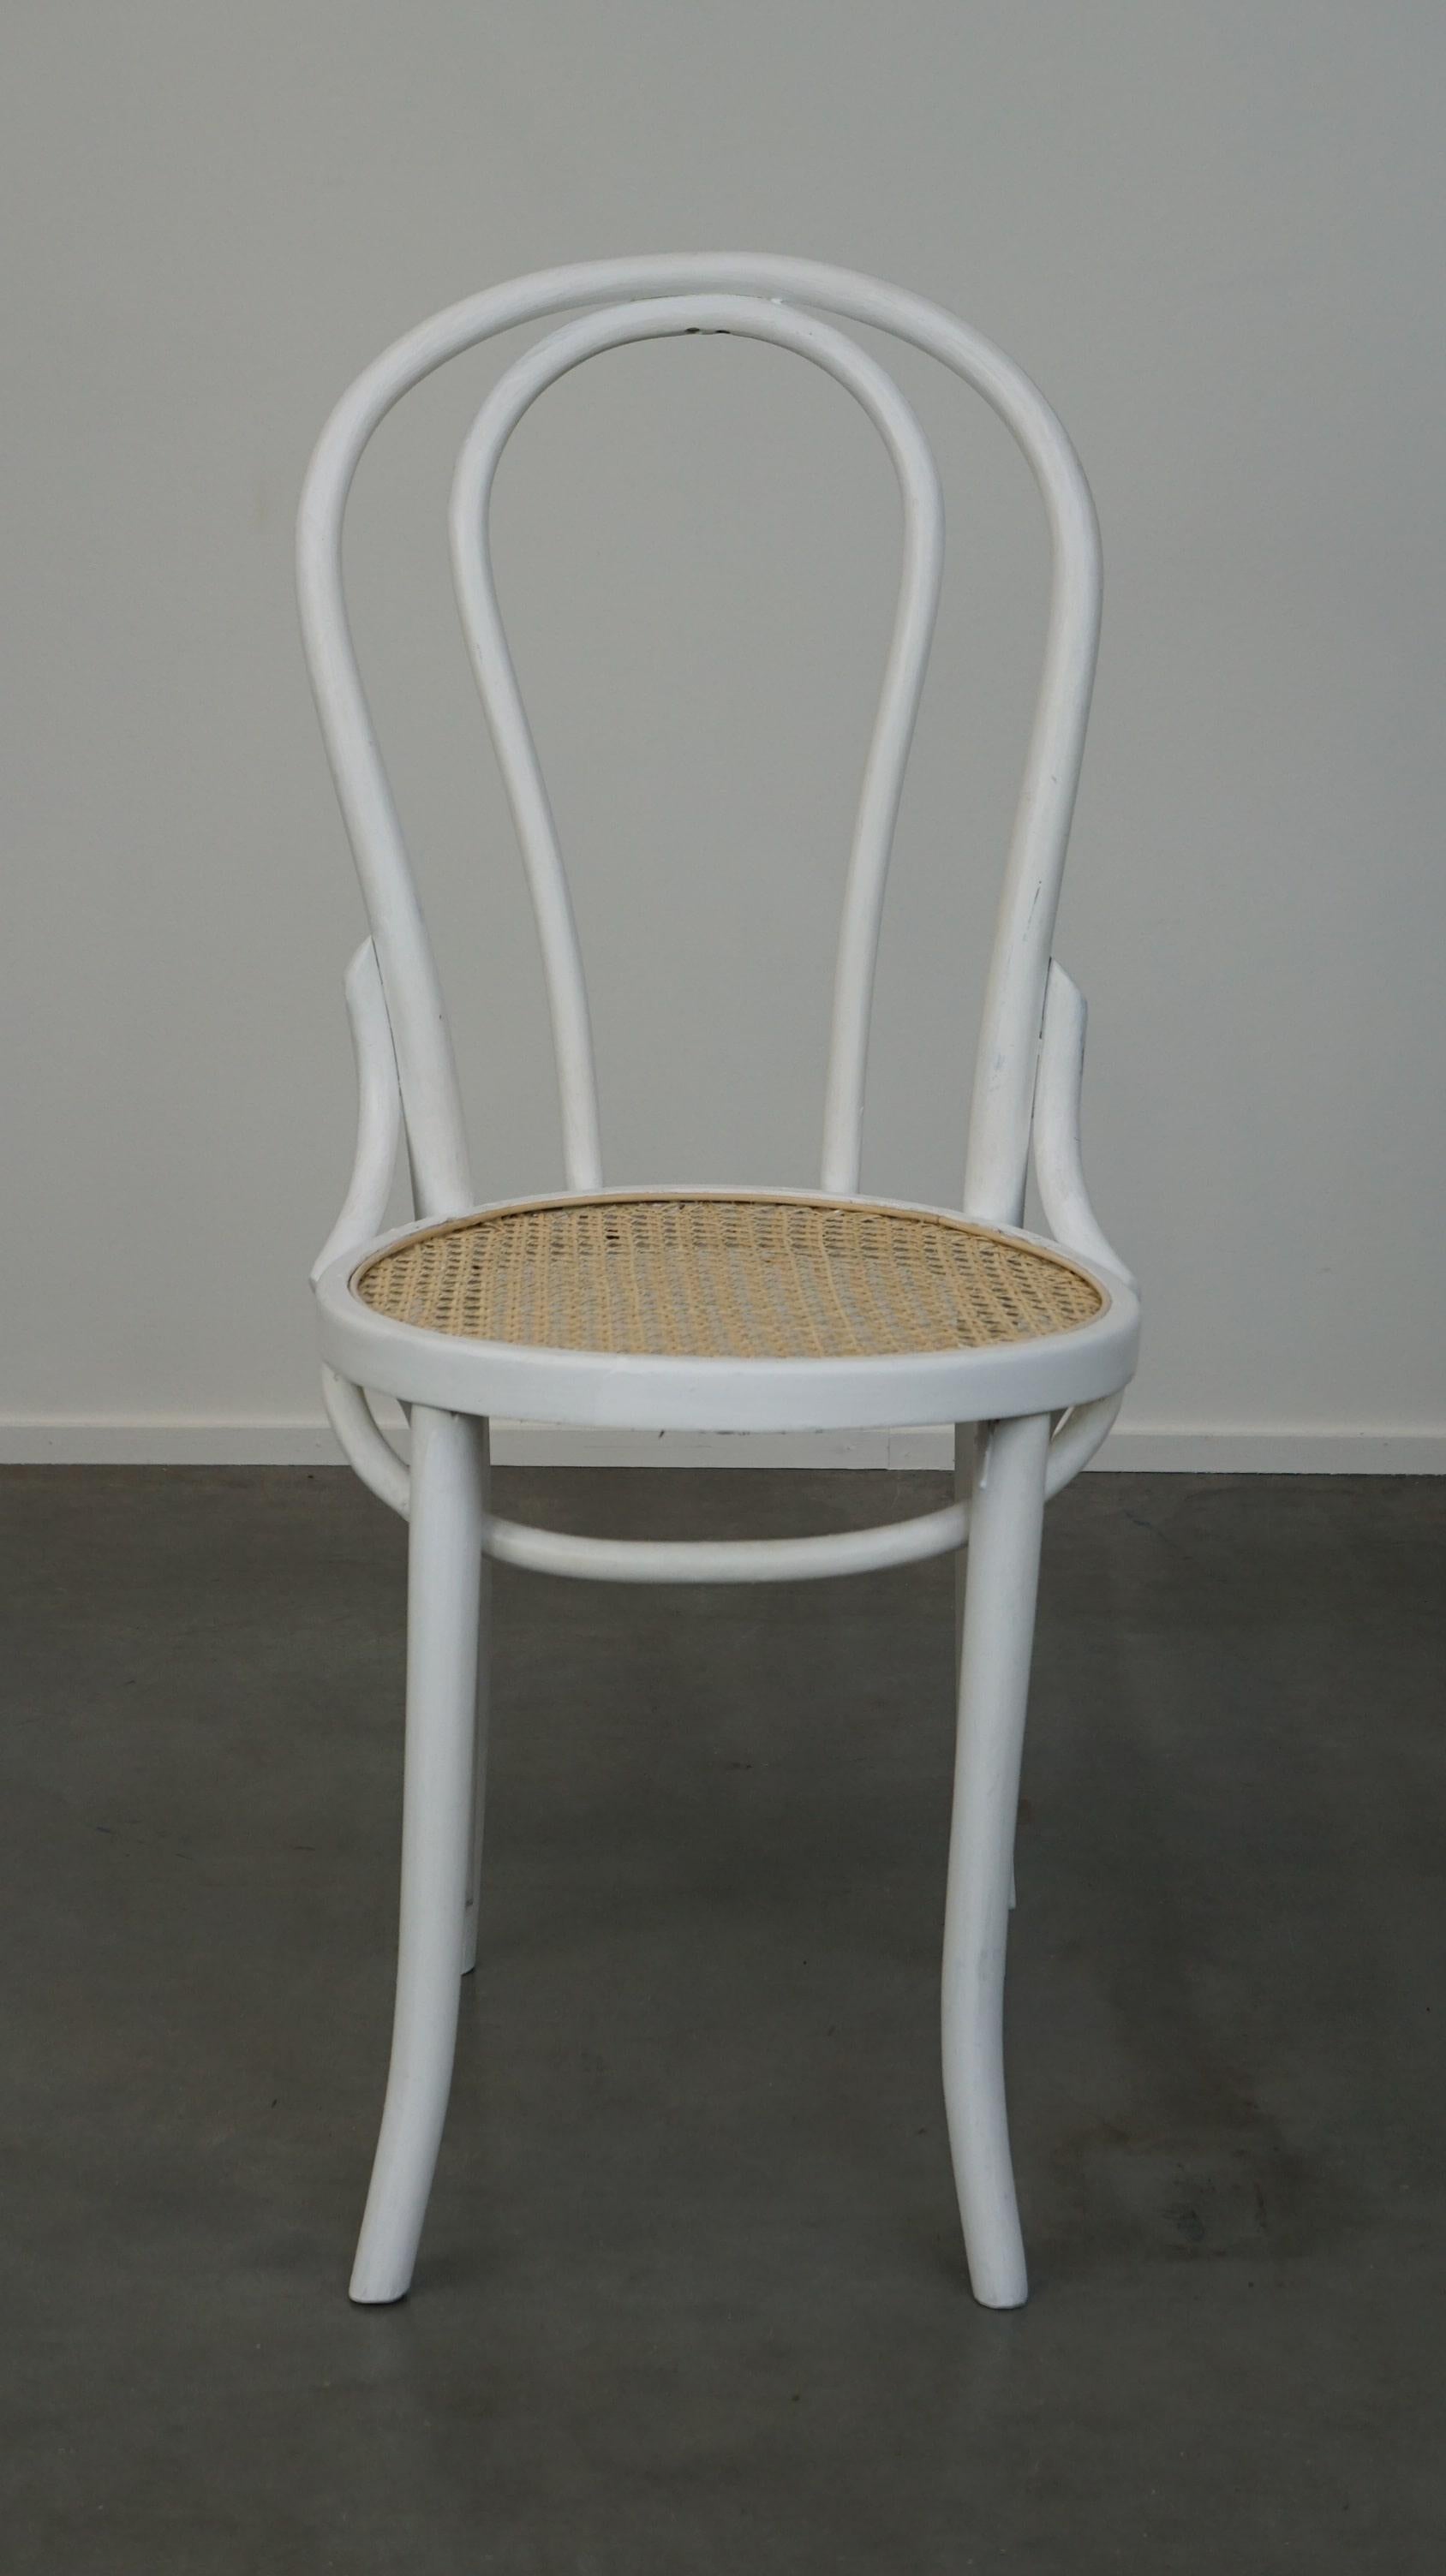 La chaise no. 18 est l'une des chaises les plus célèbres de Thonet. Cette chaise a été produite par le designer autrichien Josef Hoffmann, probablement vers 1900. Cette chaise est repeinte en blanc et a une nouvelle assise tissée à la main. Il est